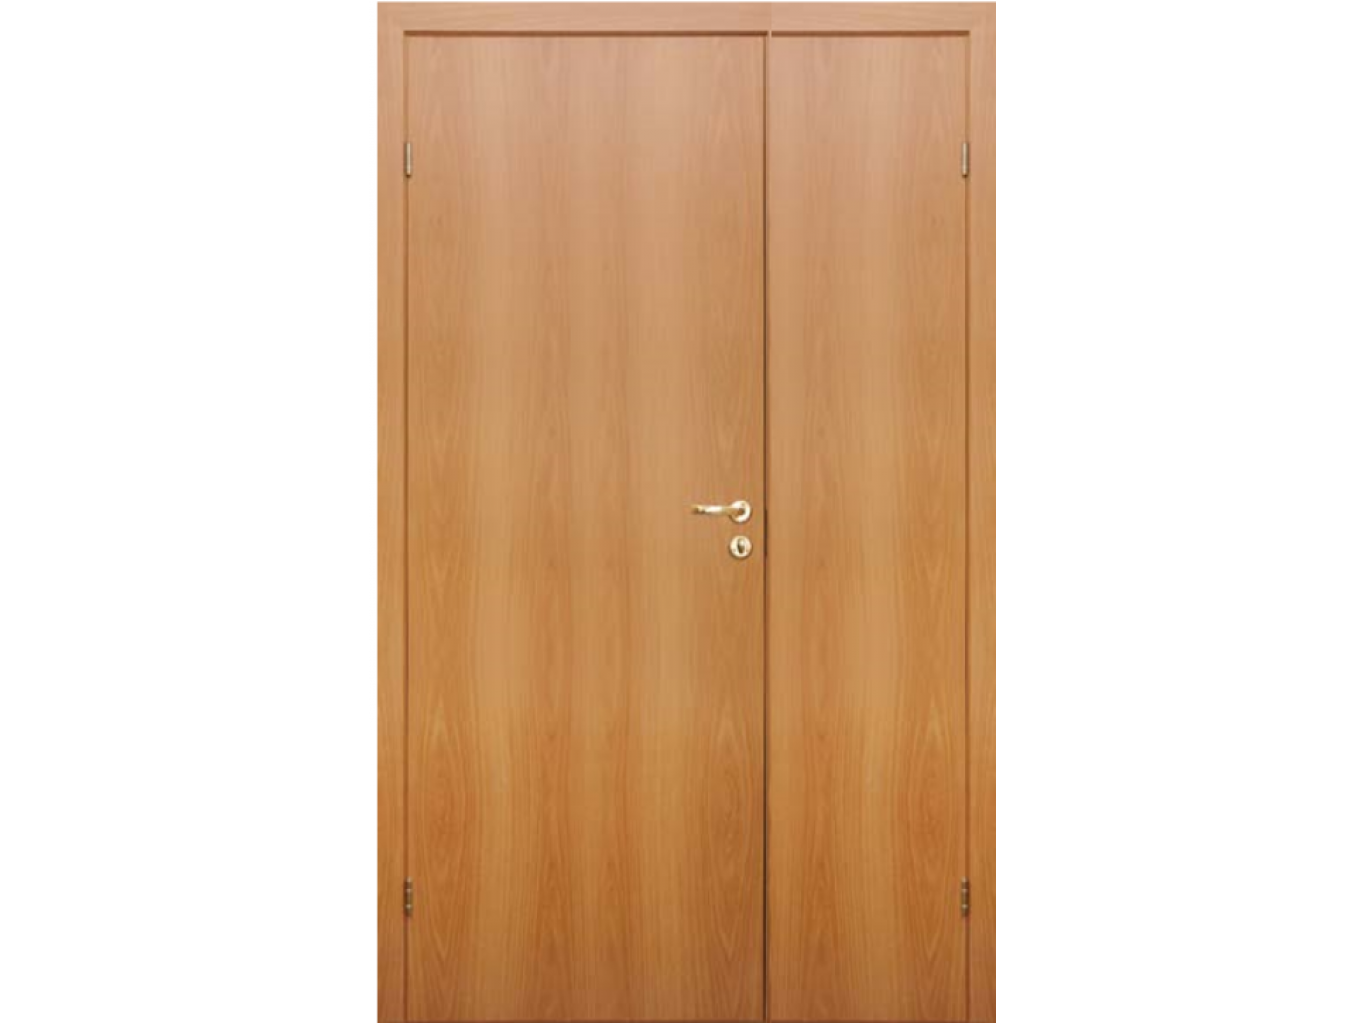 Олови Миланский орех. Дверь межкомнатная Олови 90. Финская дверь Олови двупольная 2000 1100. Двери Олови двустворчатые.